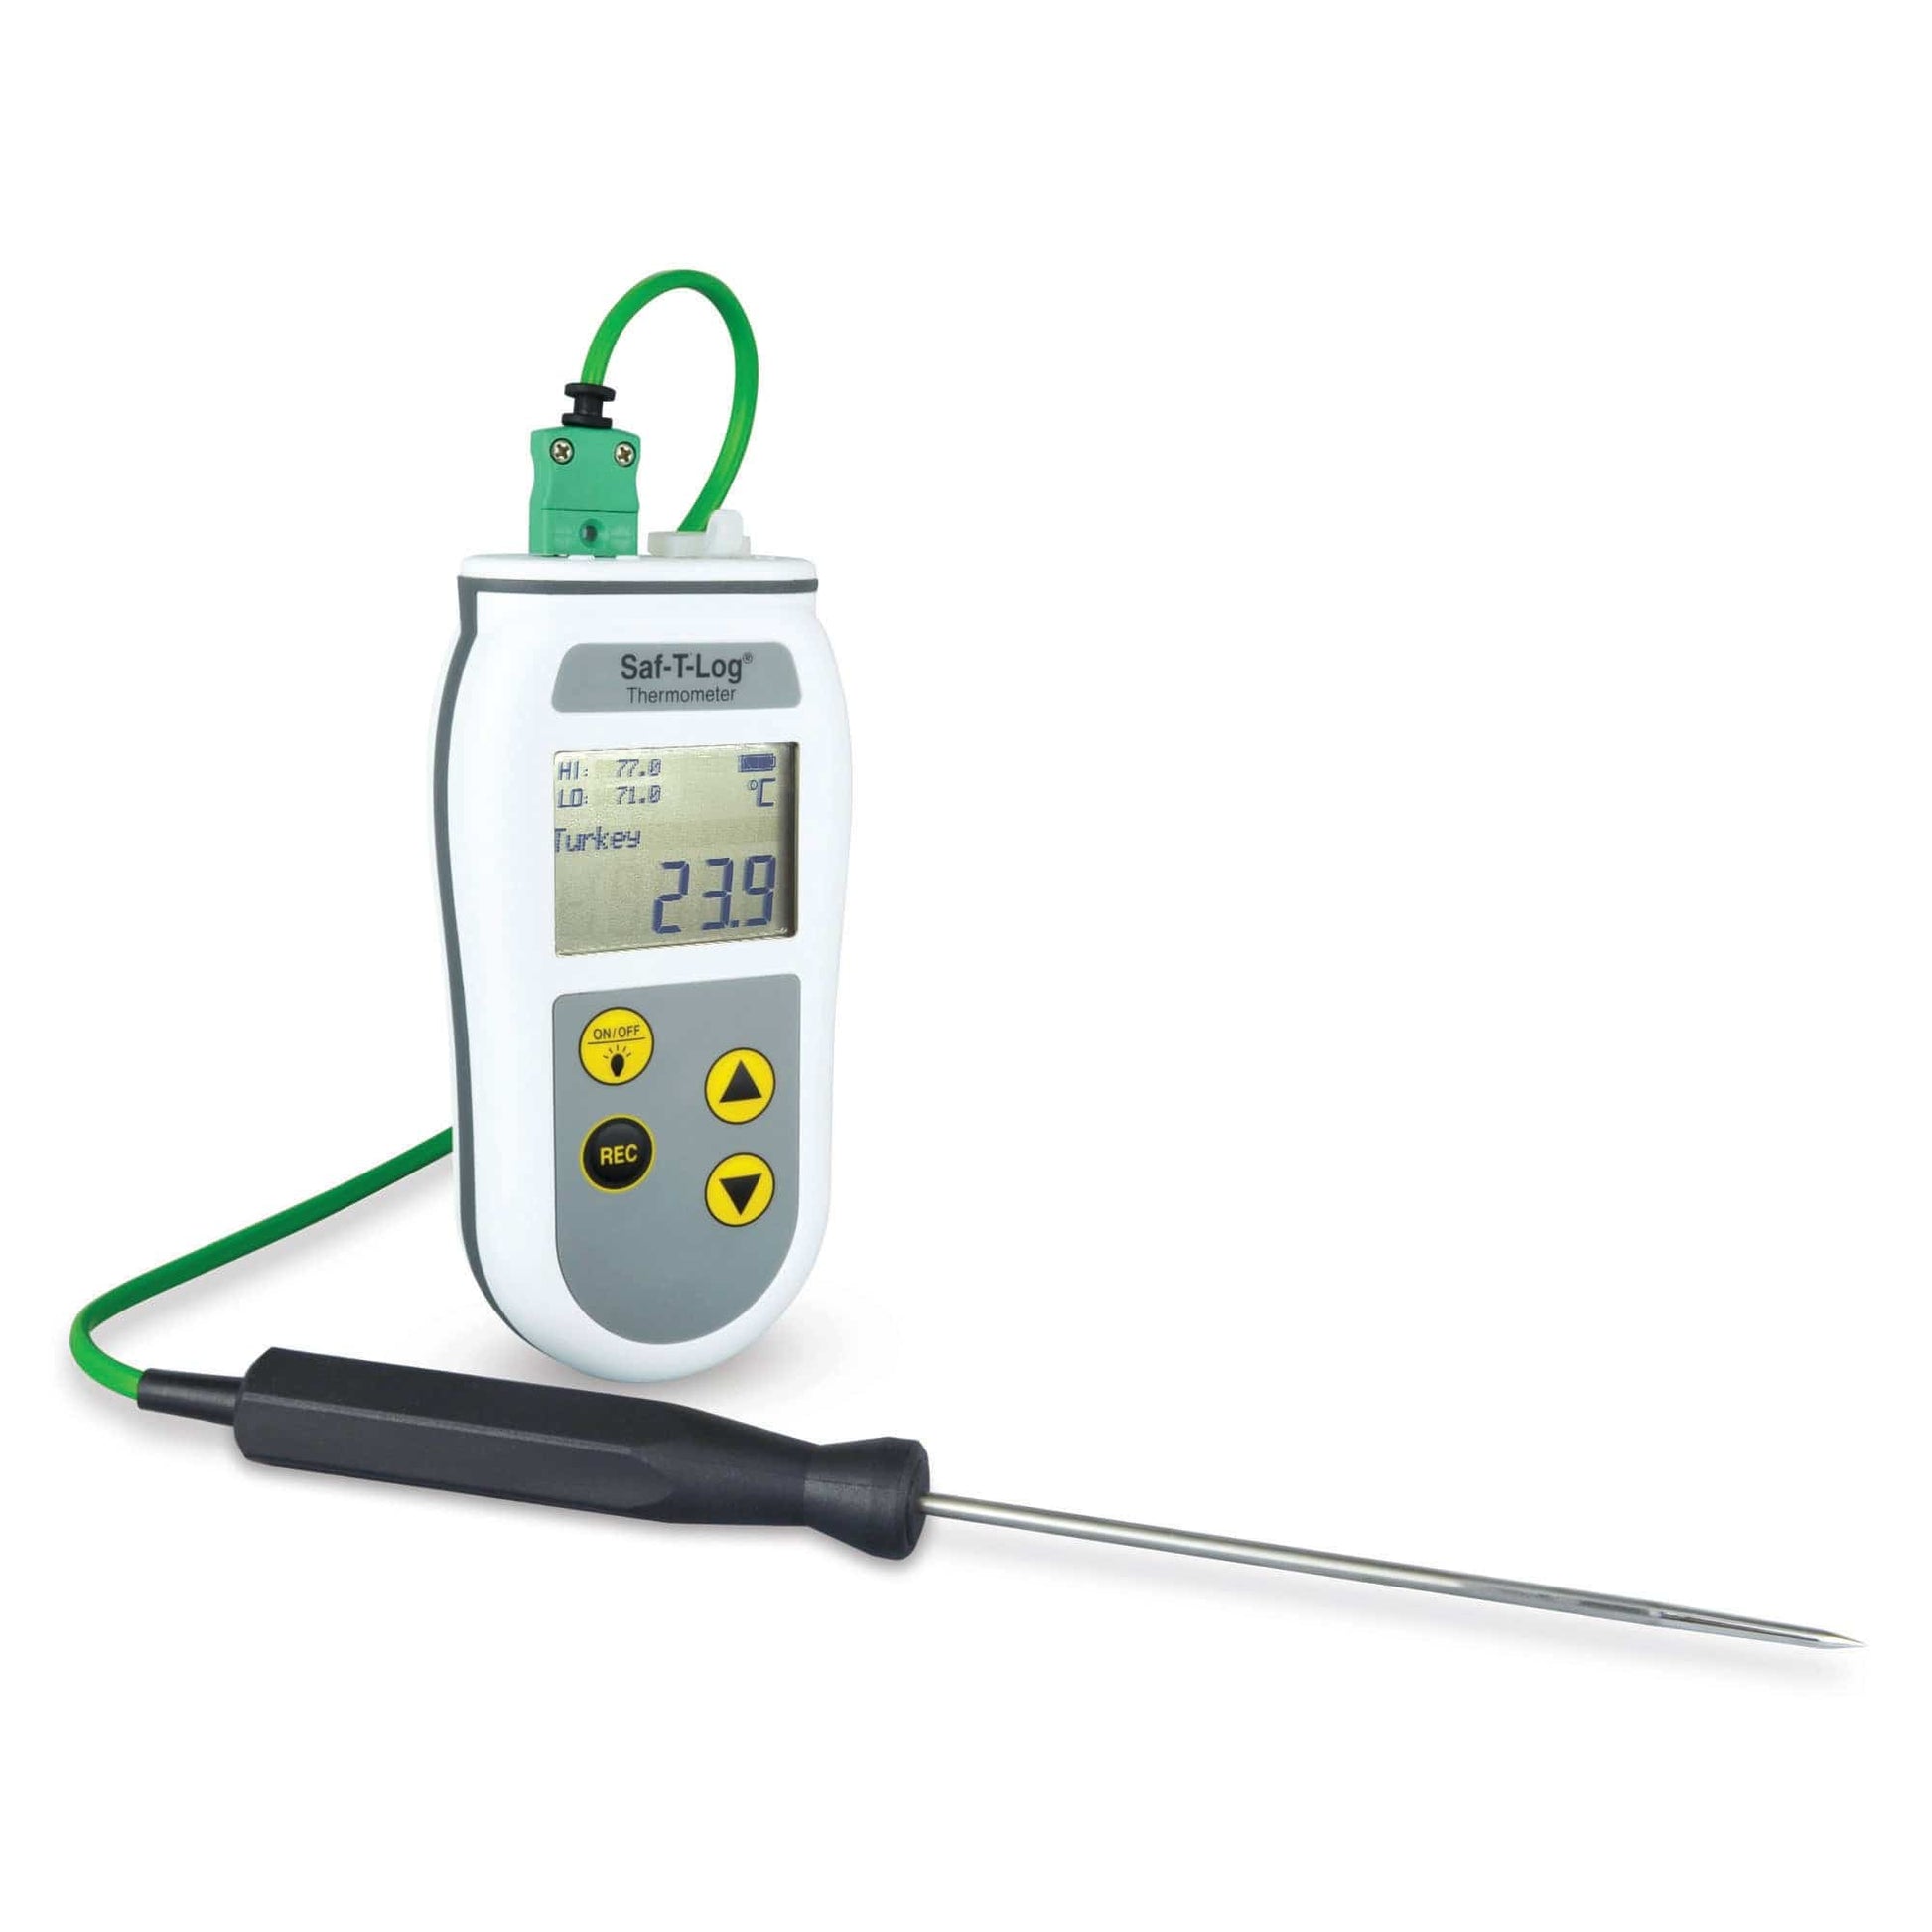 Un termometro digitale HACCP Saf-T-Log di Thermometer.fr su sfondo bianco.